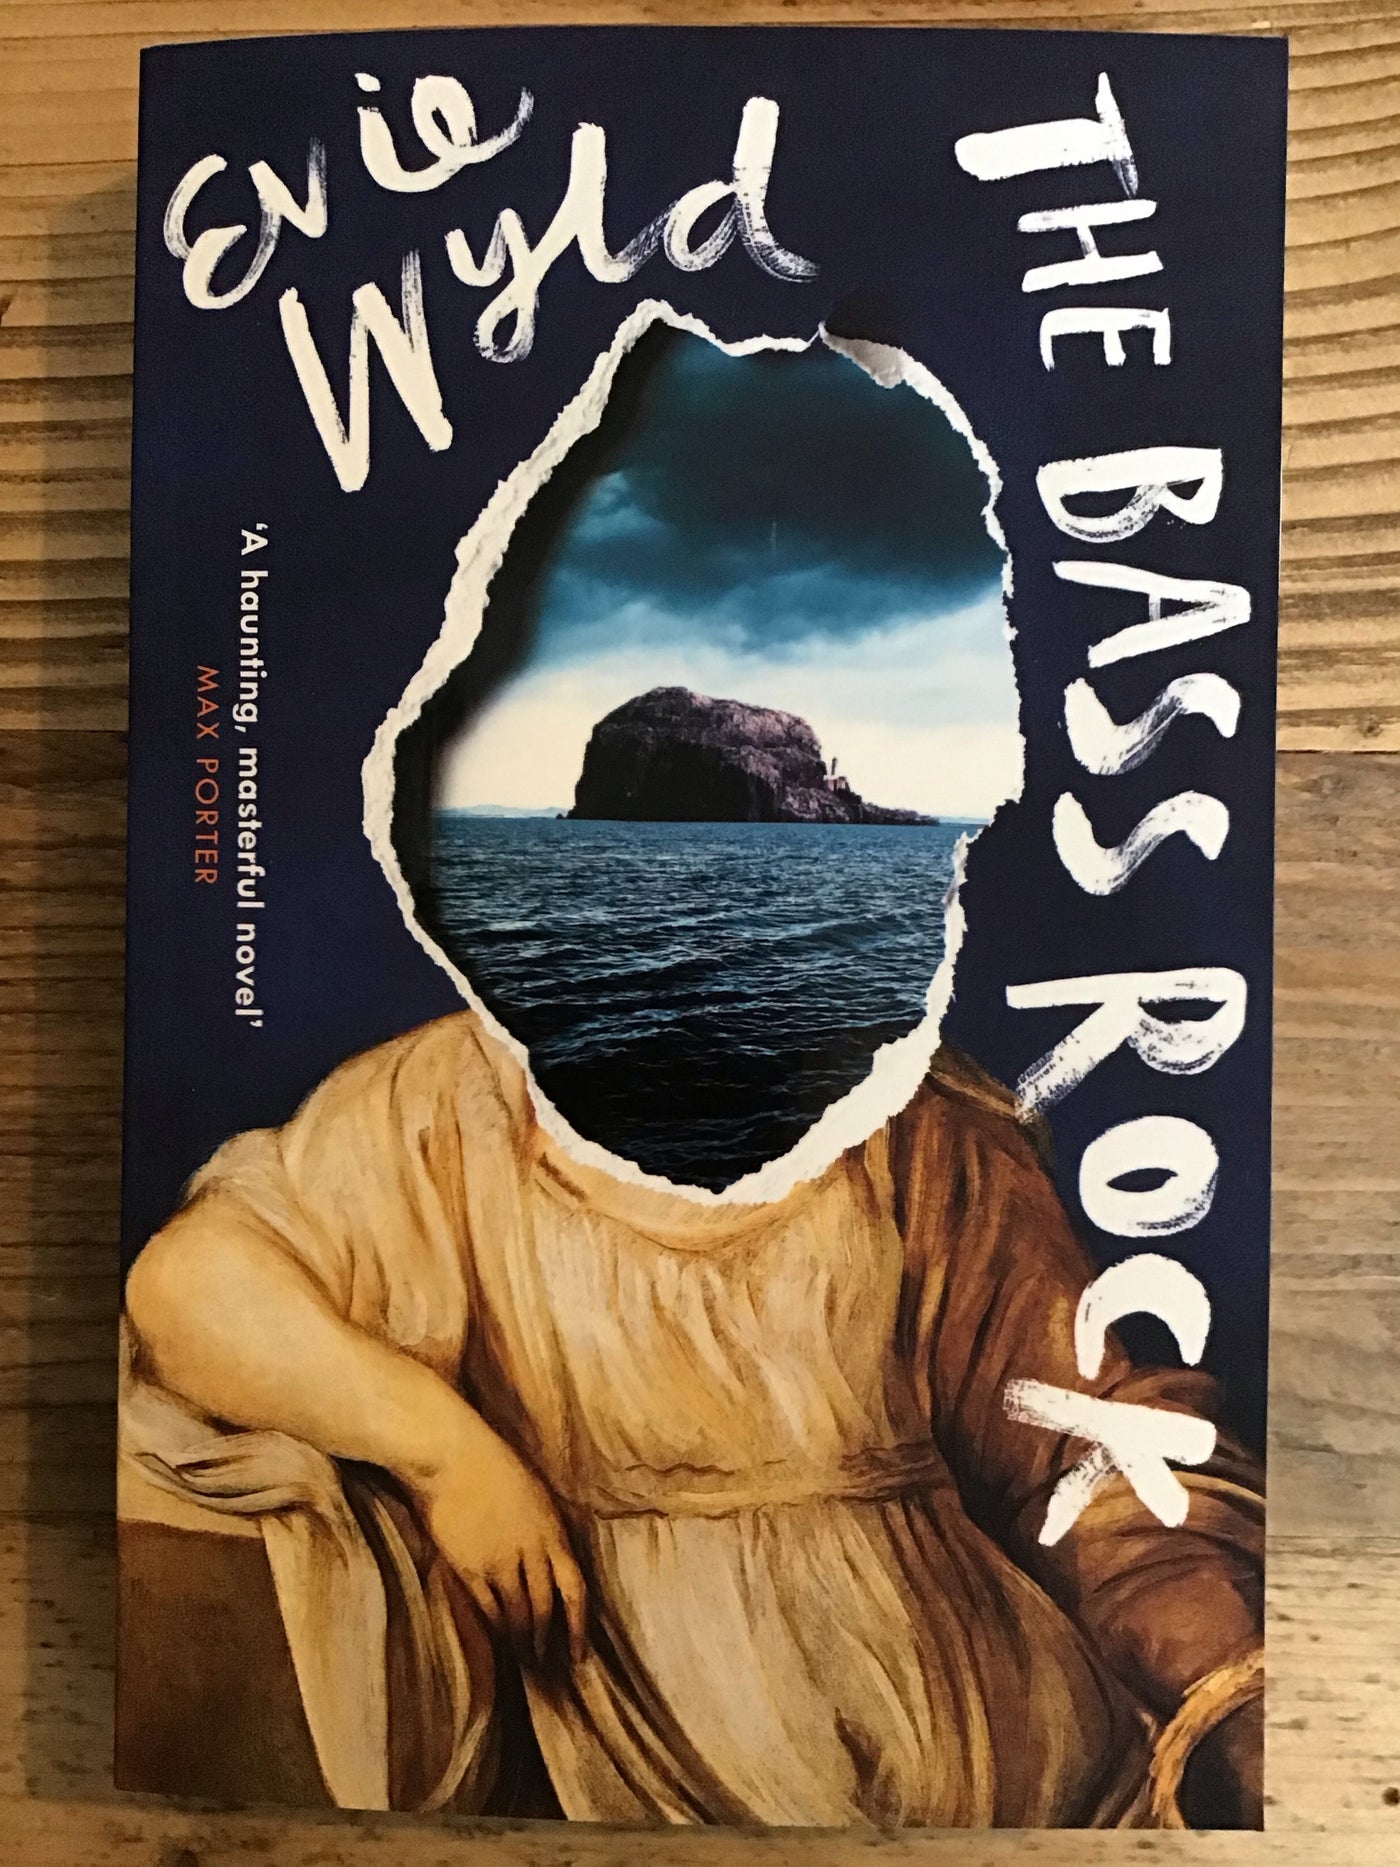 The Bass Rock